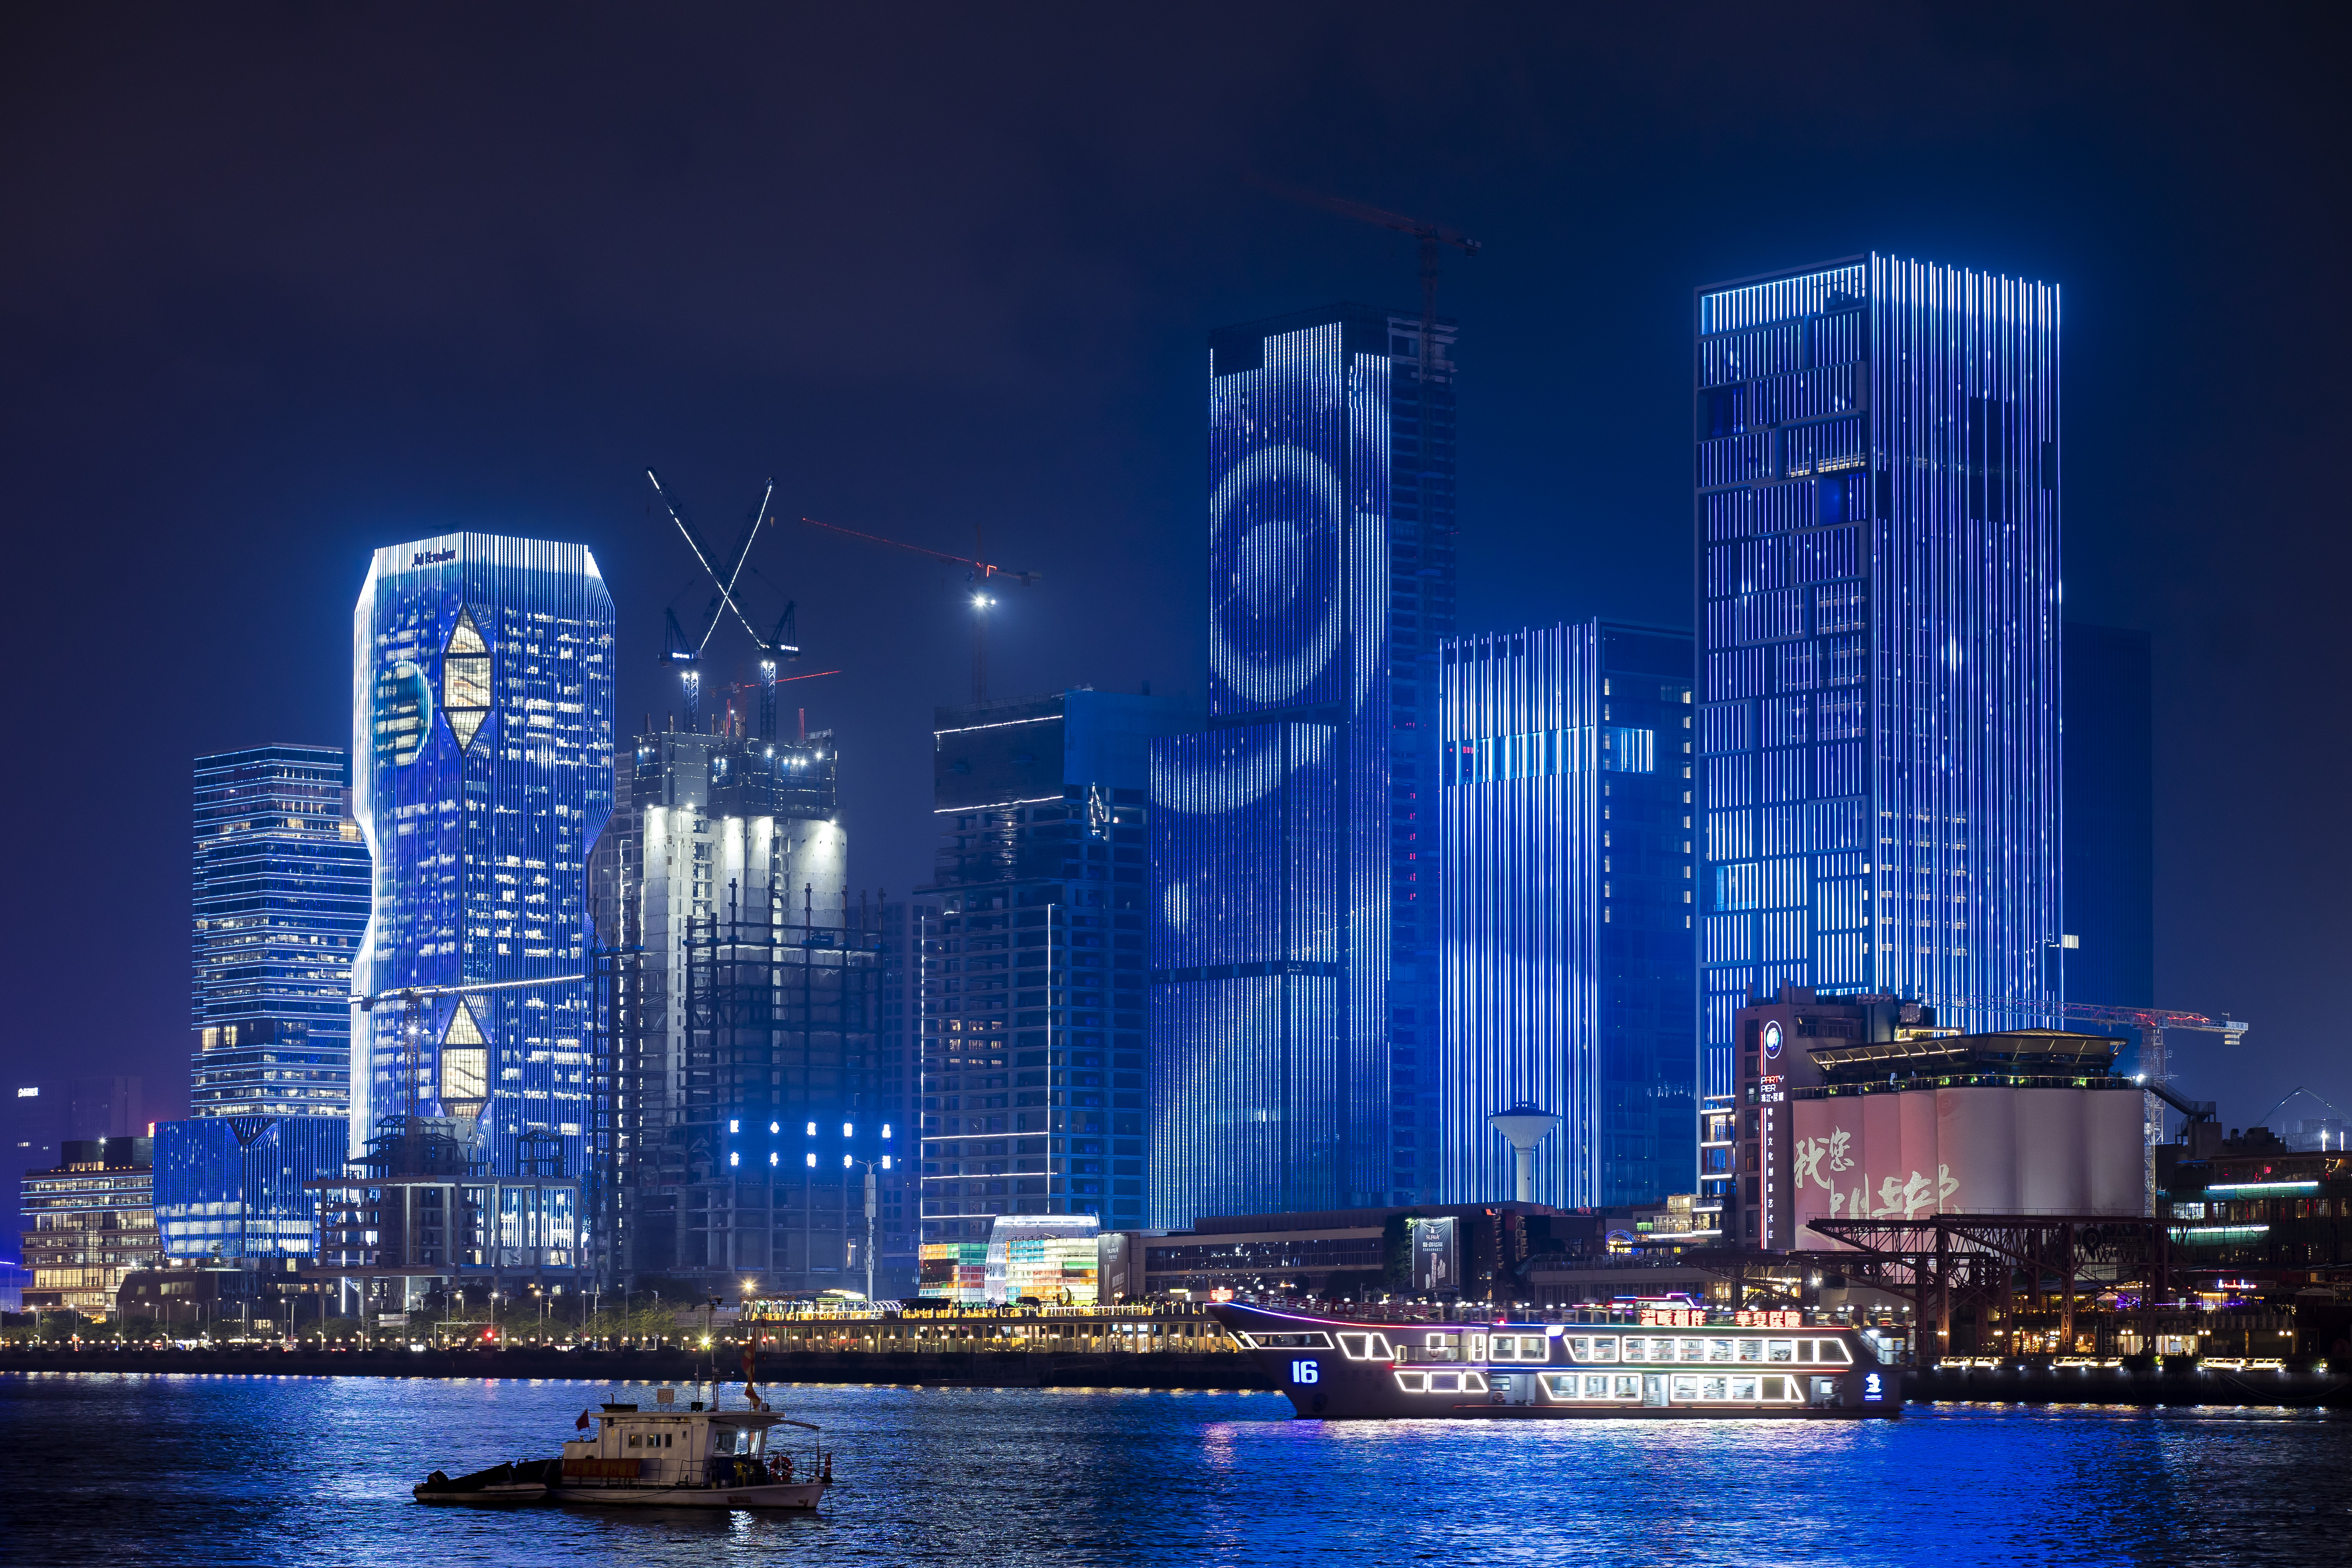 琶洲人工智能与数字经济试验区的楼宇群是第一次参加广州城市灯光秀